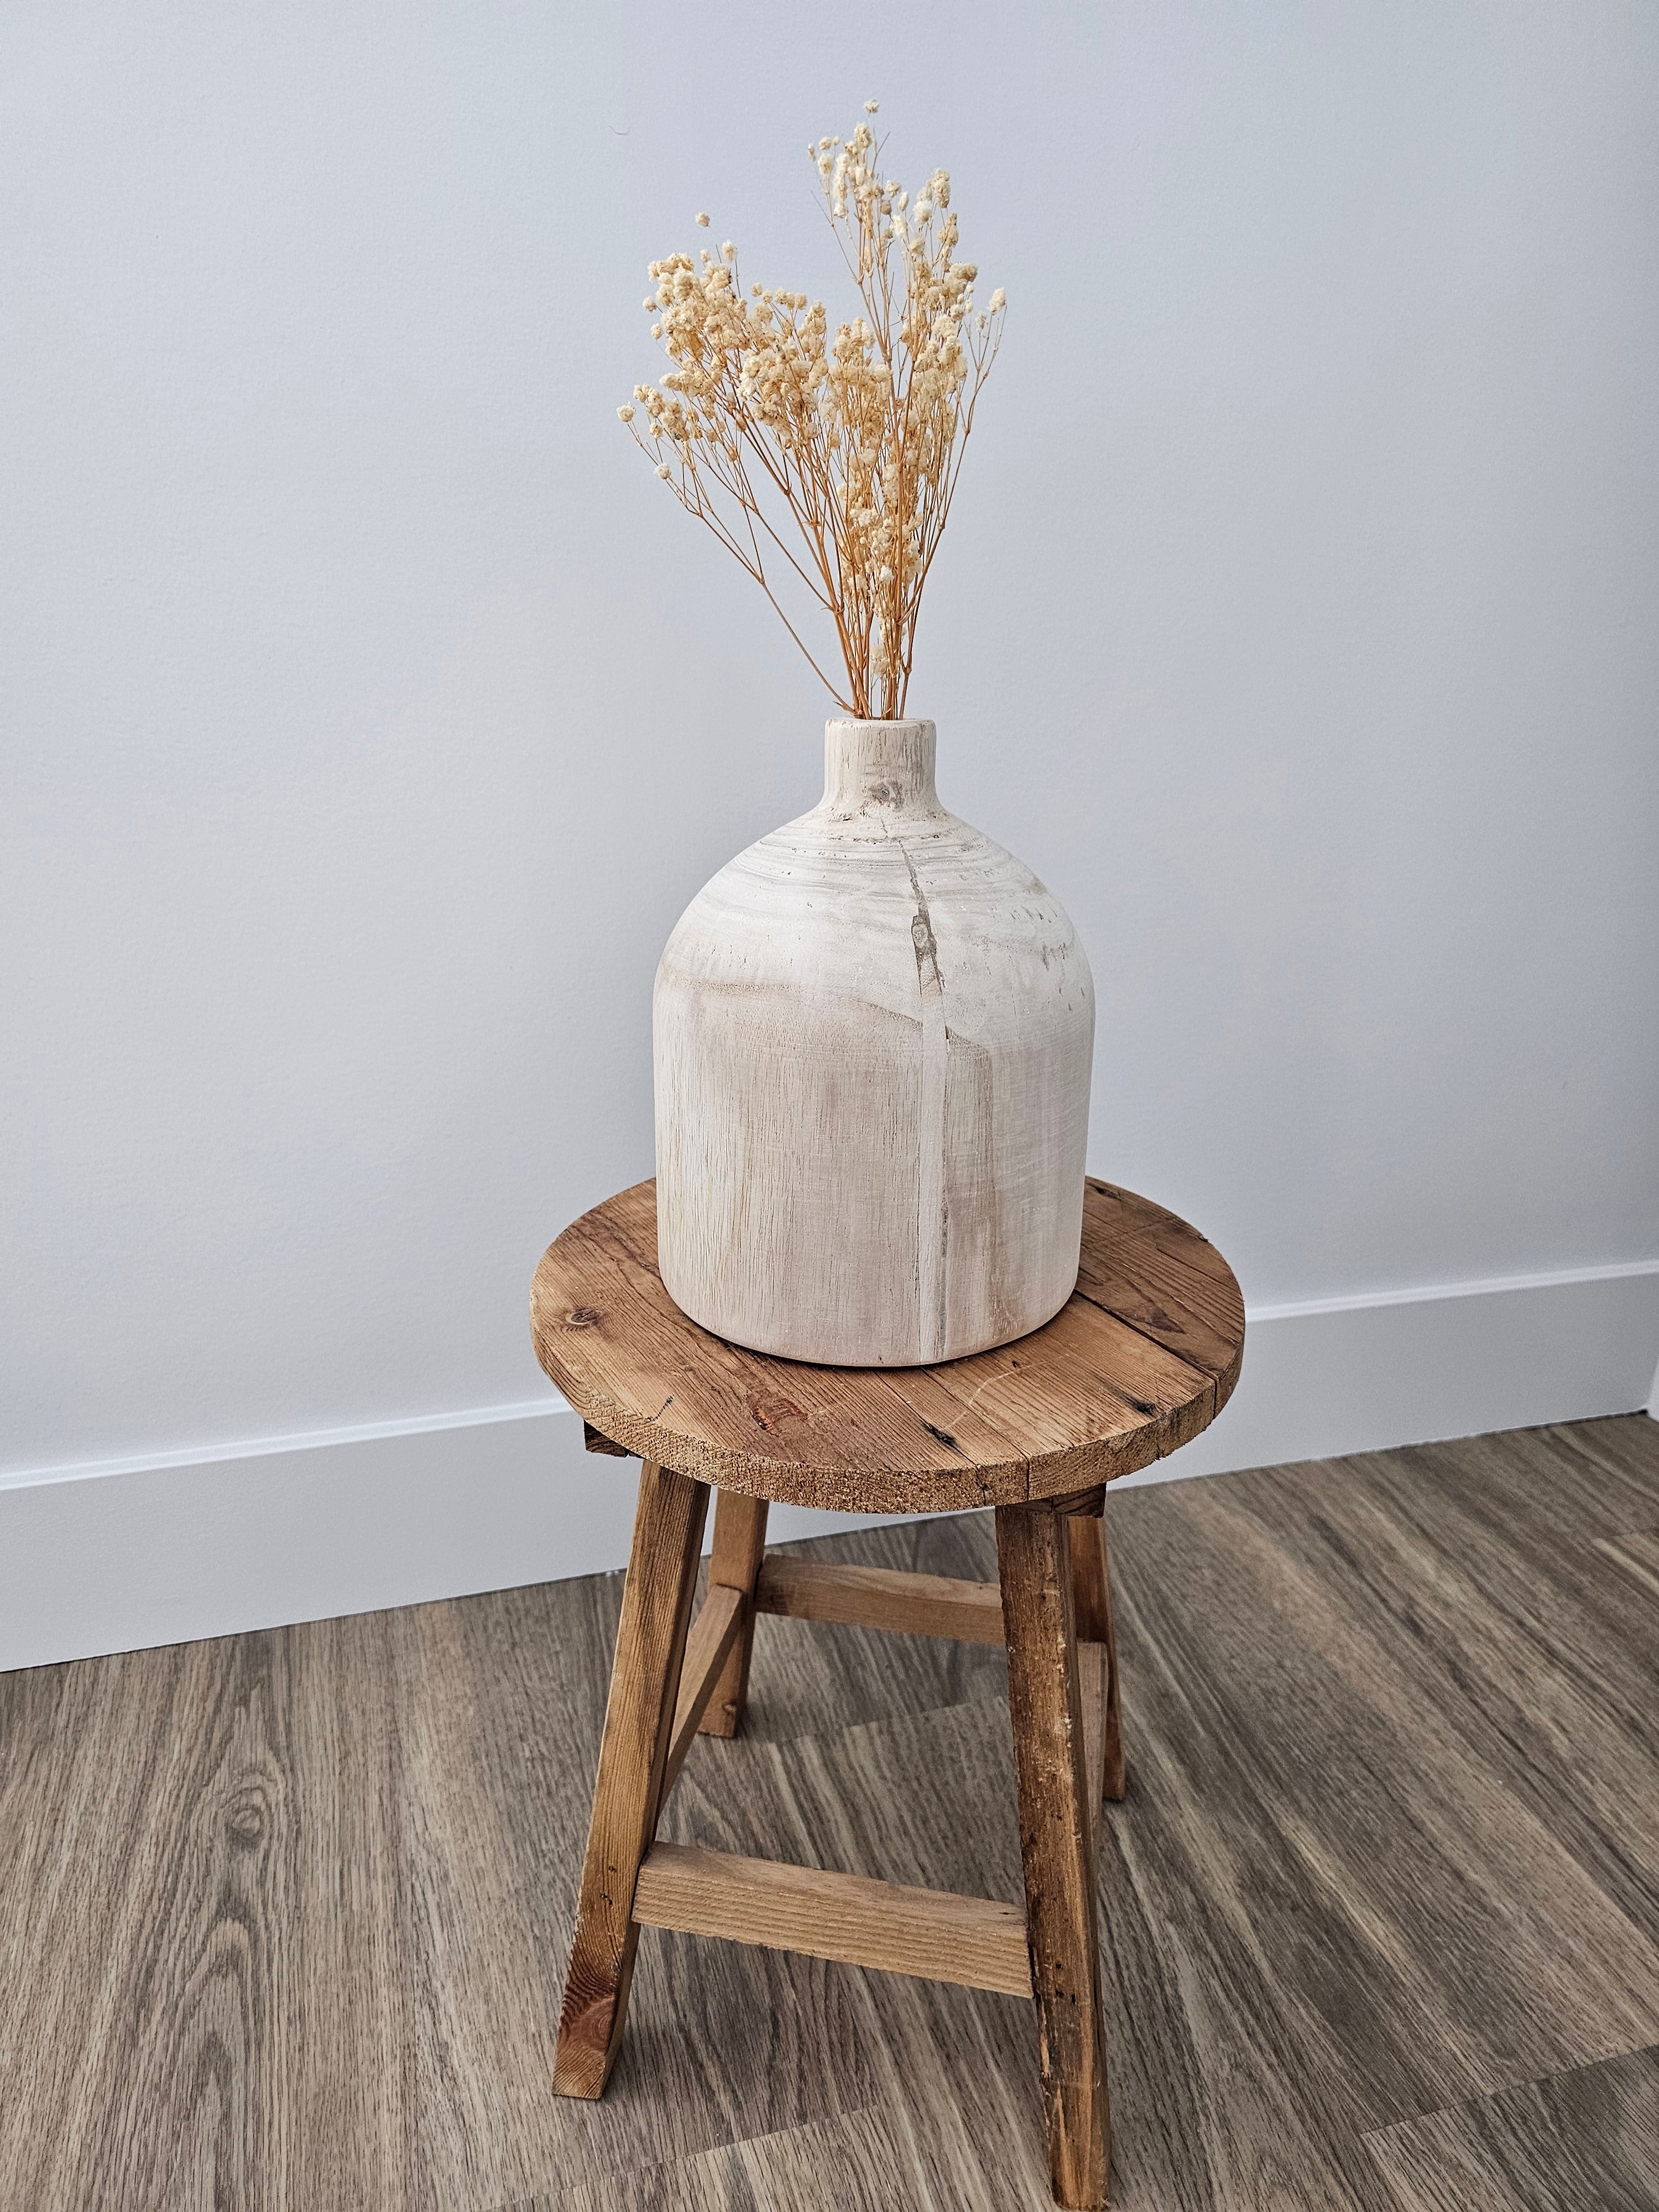 Large natural wood vase